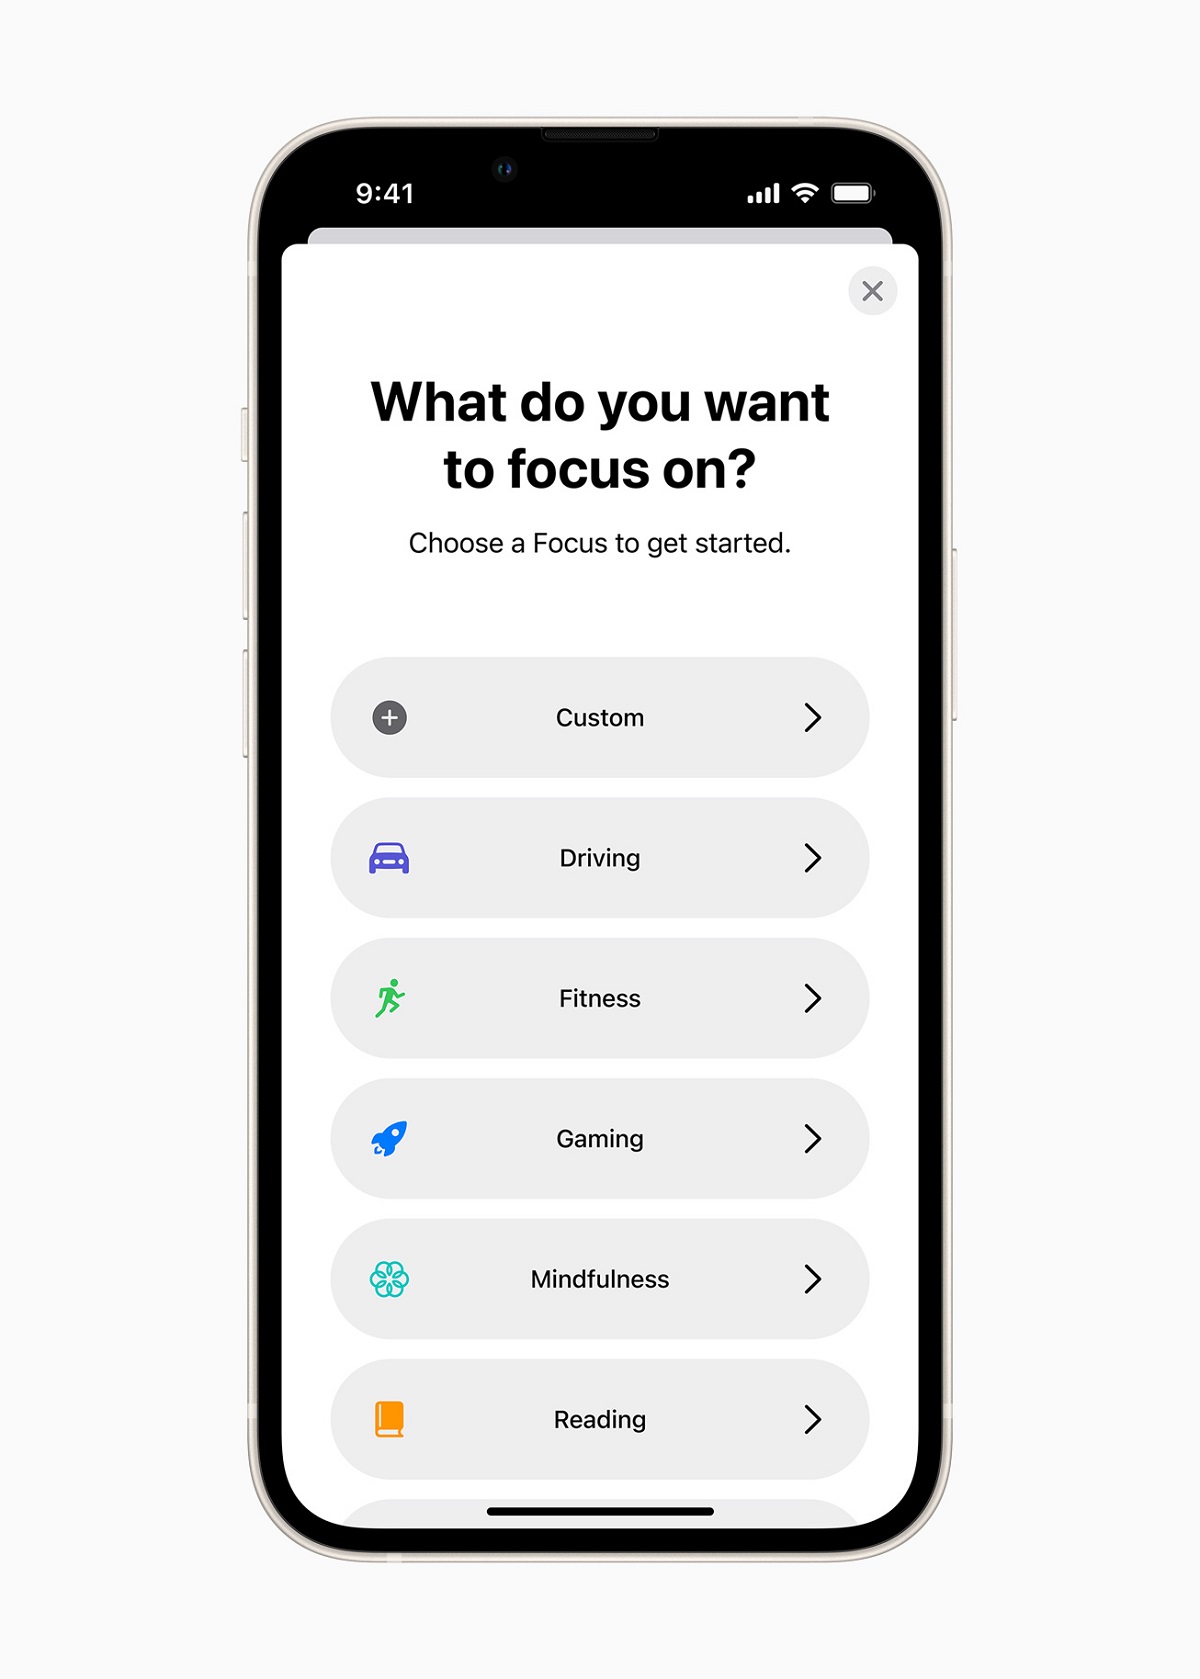 Focus помогает пользователям фильтровать уведомления, чтобы не отвлекаться, используя настраиваемый Focus или предлагаемый Focus, например Work или Fitness.